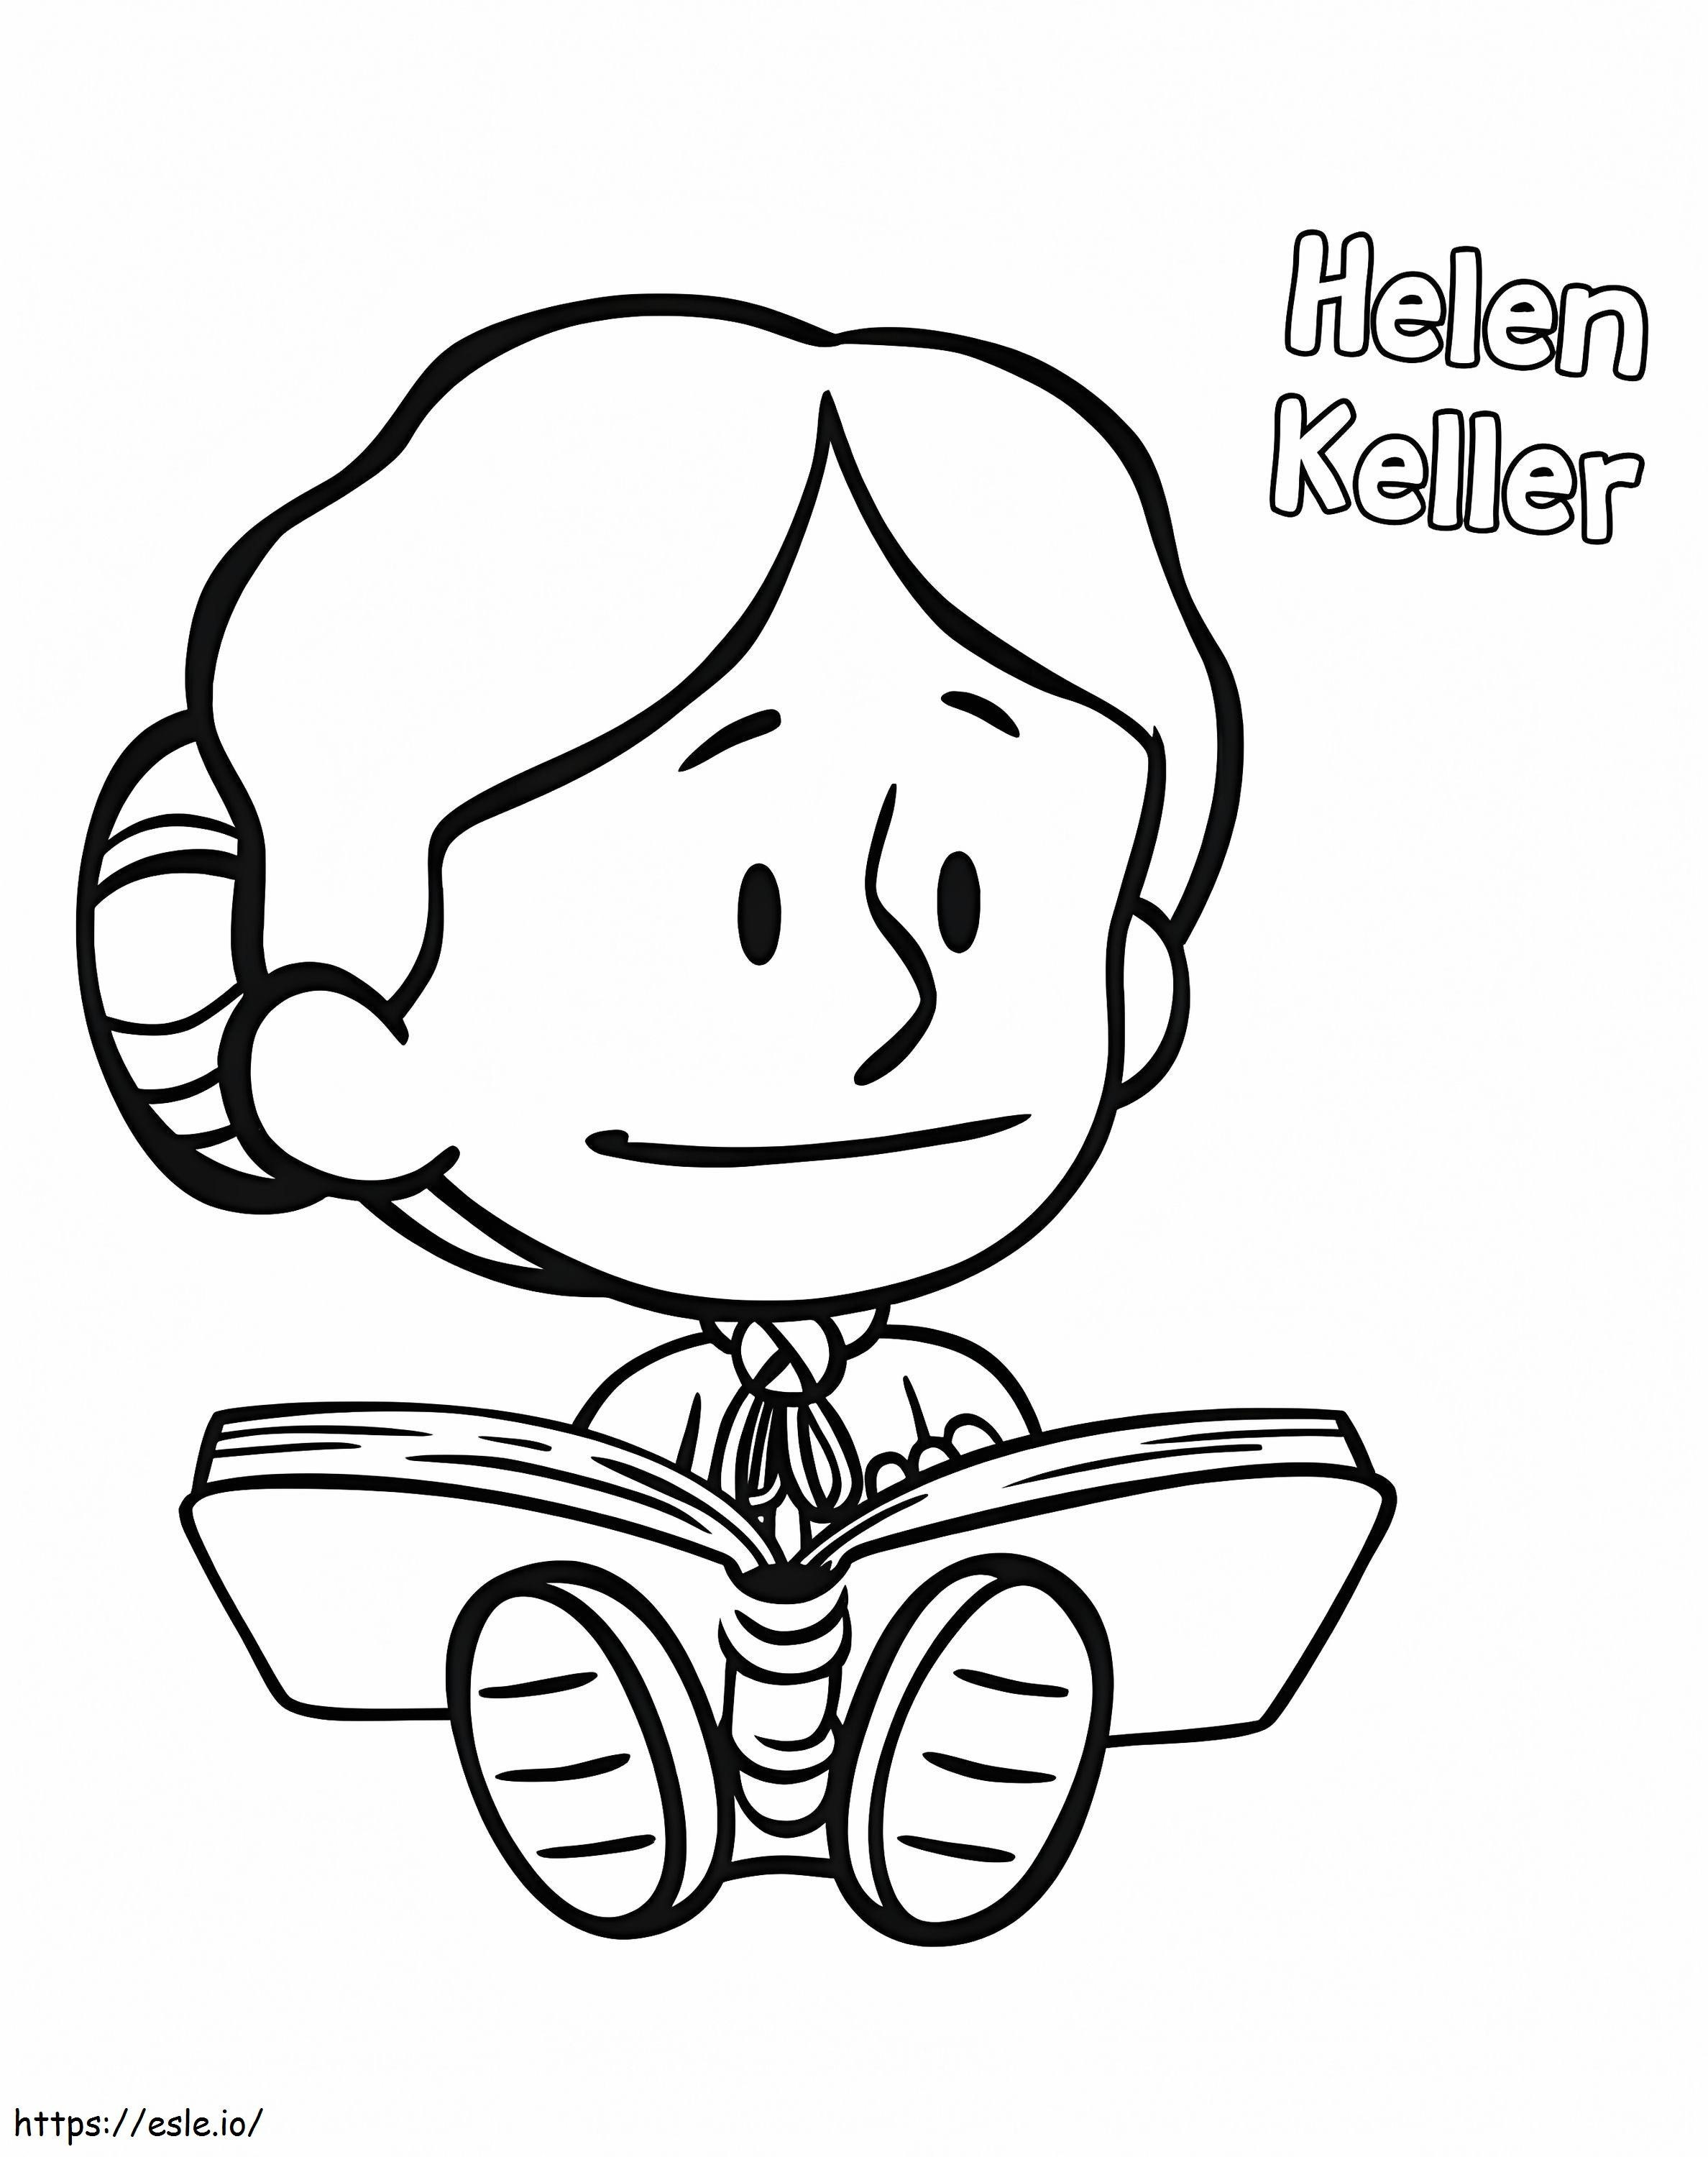 Chibi Helen Keller ausmalbilder